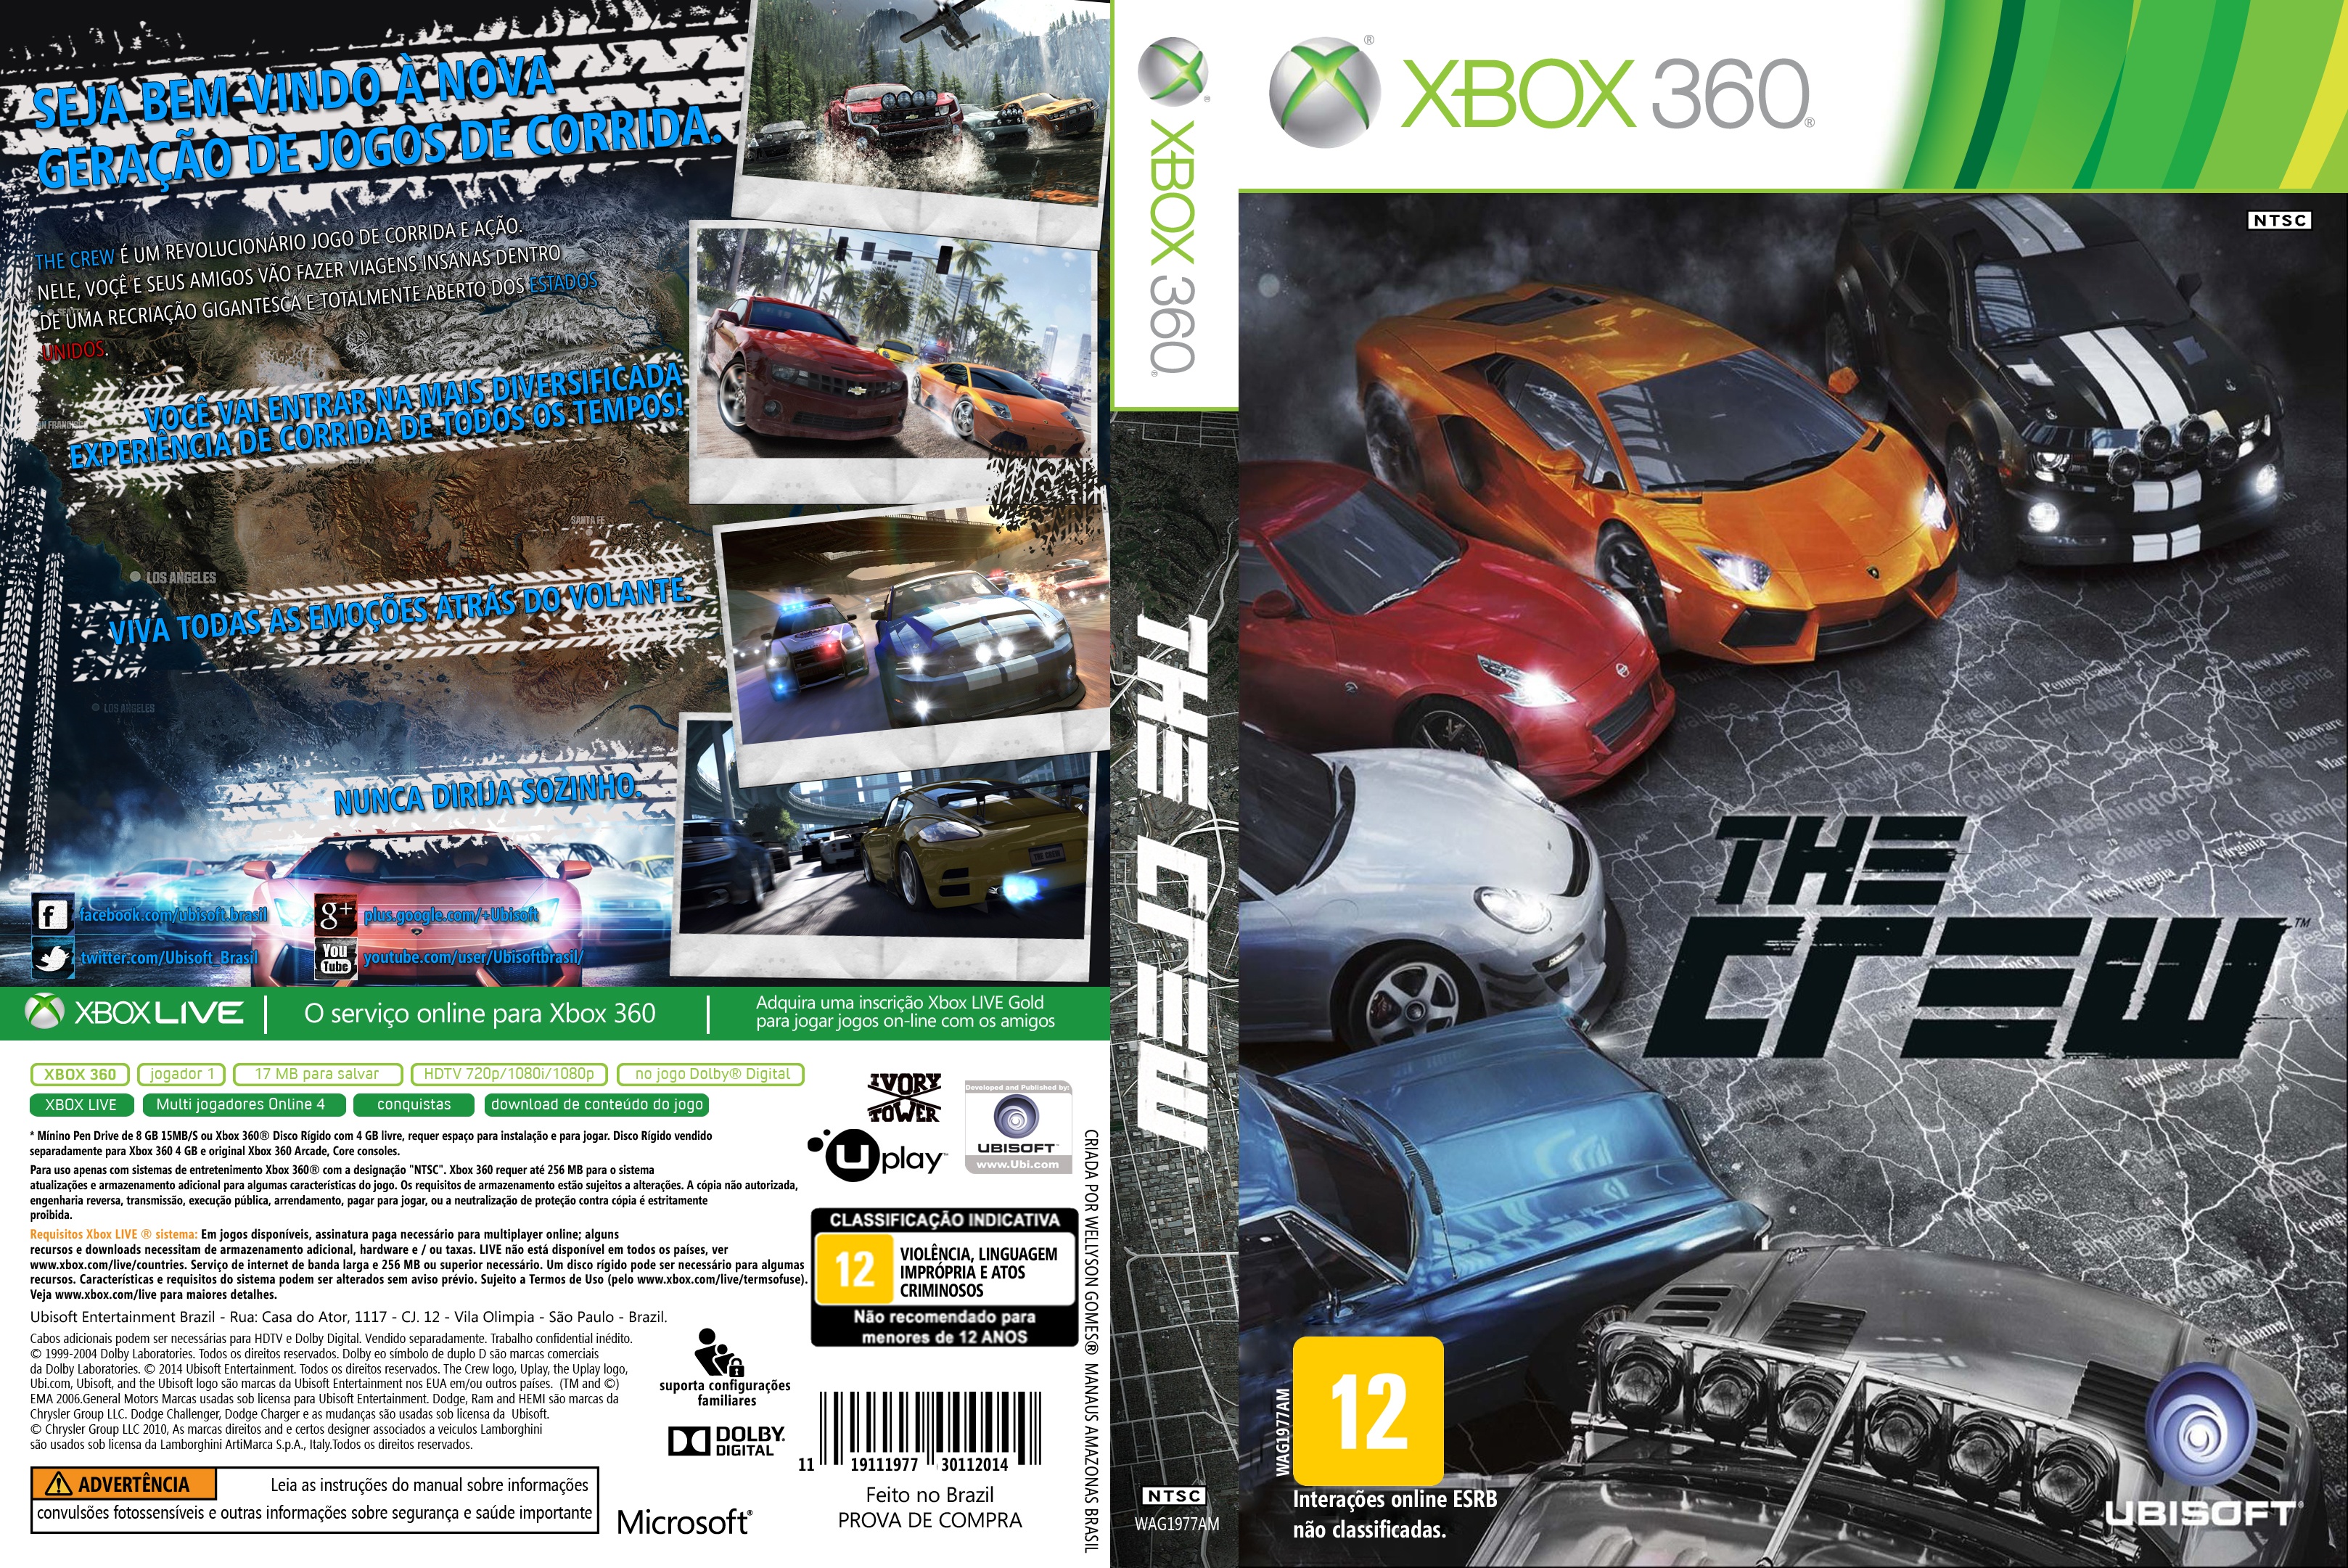 Игры xbox 360 на xbox one. The Crew хбокс 360. The Crew 2 на Xbox 360. The Crew 2 [Xbox one]. Обложки игр для Xbox 360.